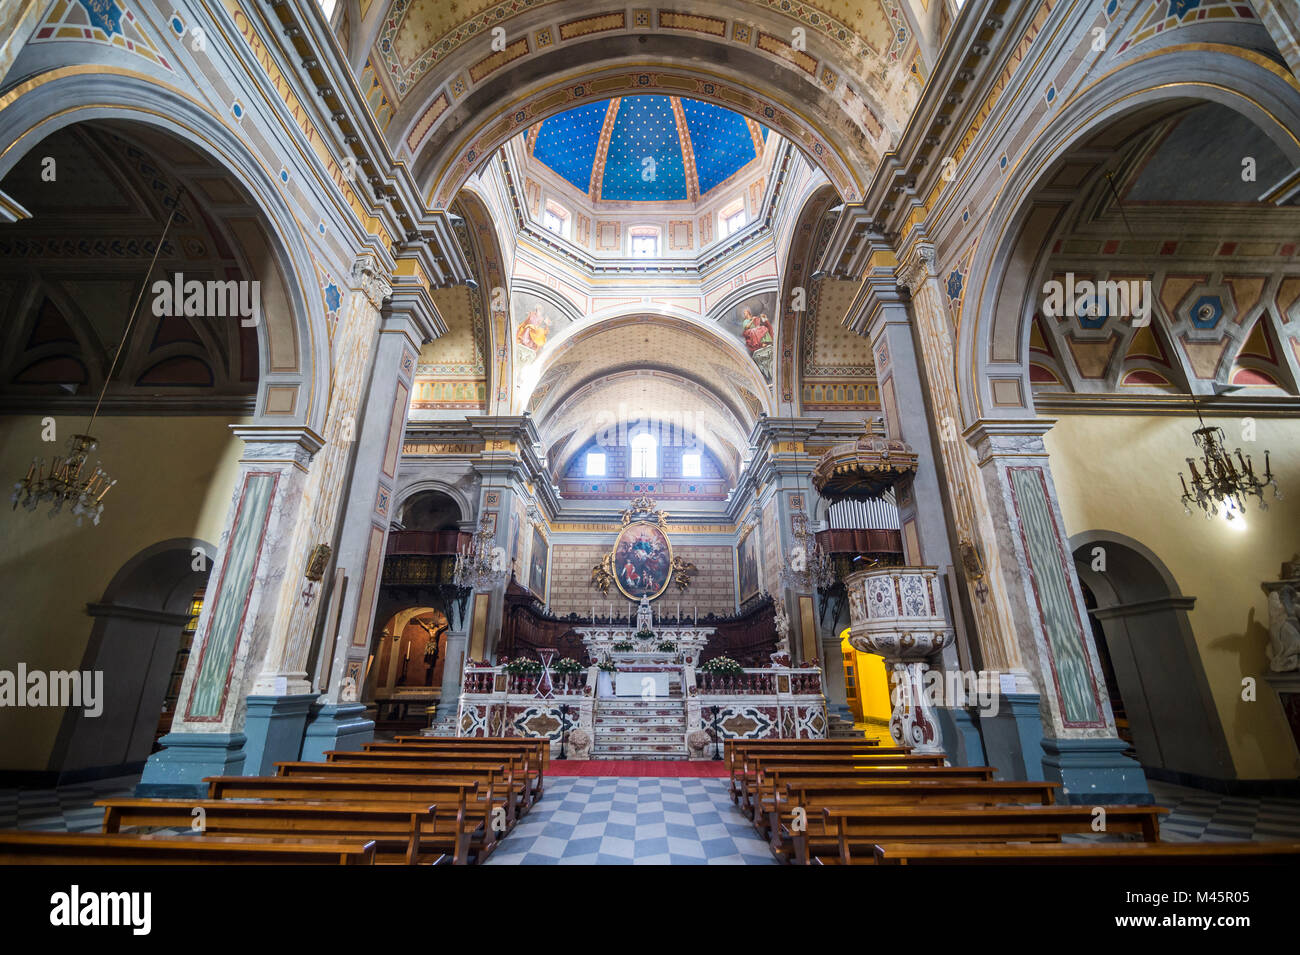 Intérieur de la cathédrale d'Oristano, Oristano, Sardaigne, Italie Banque D'Images